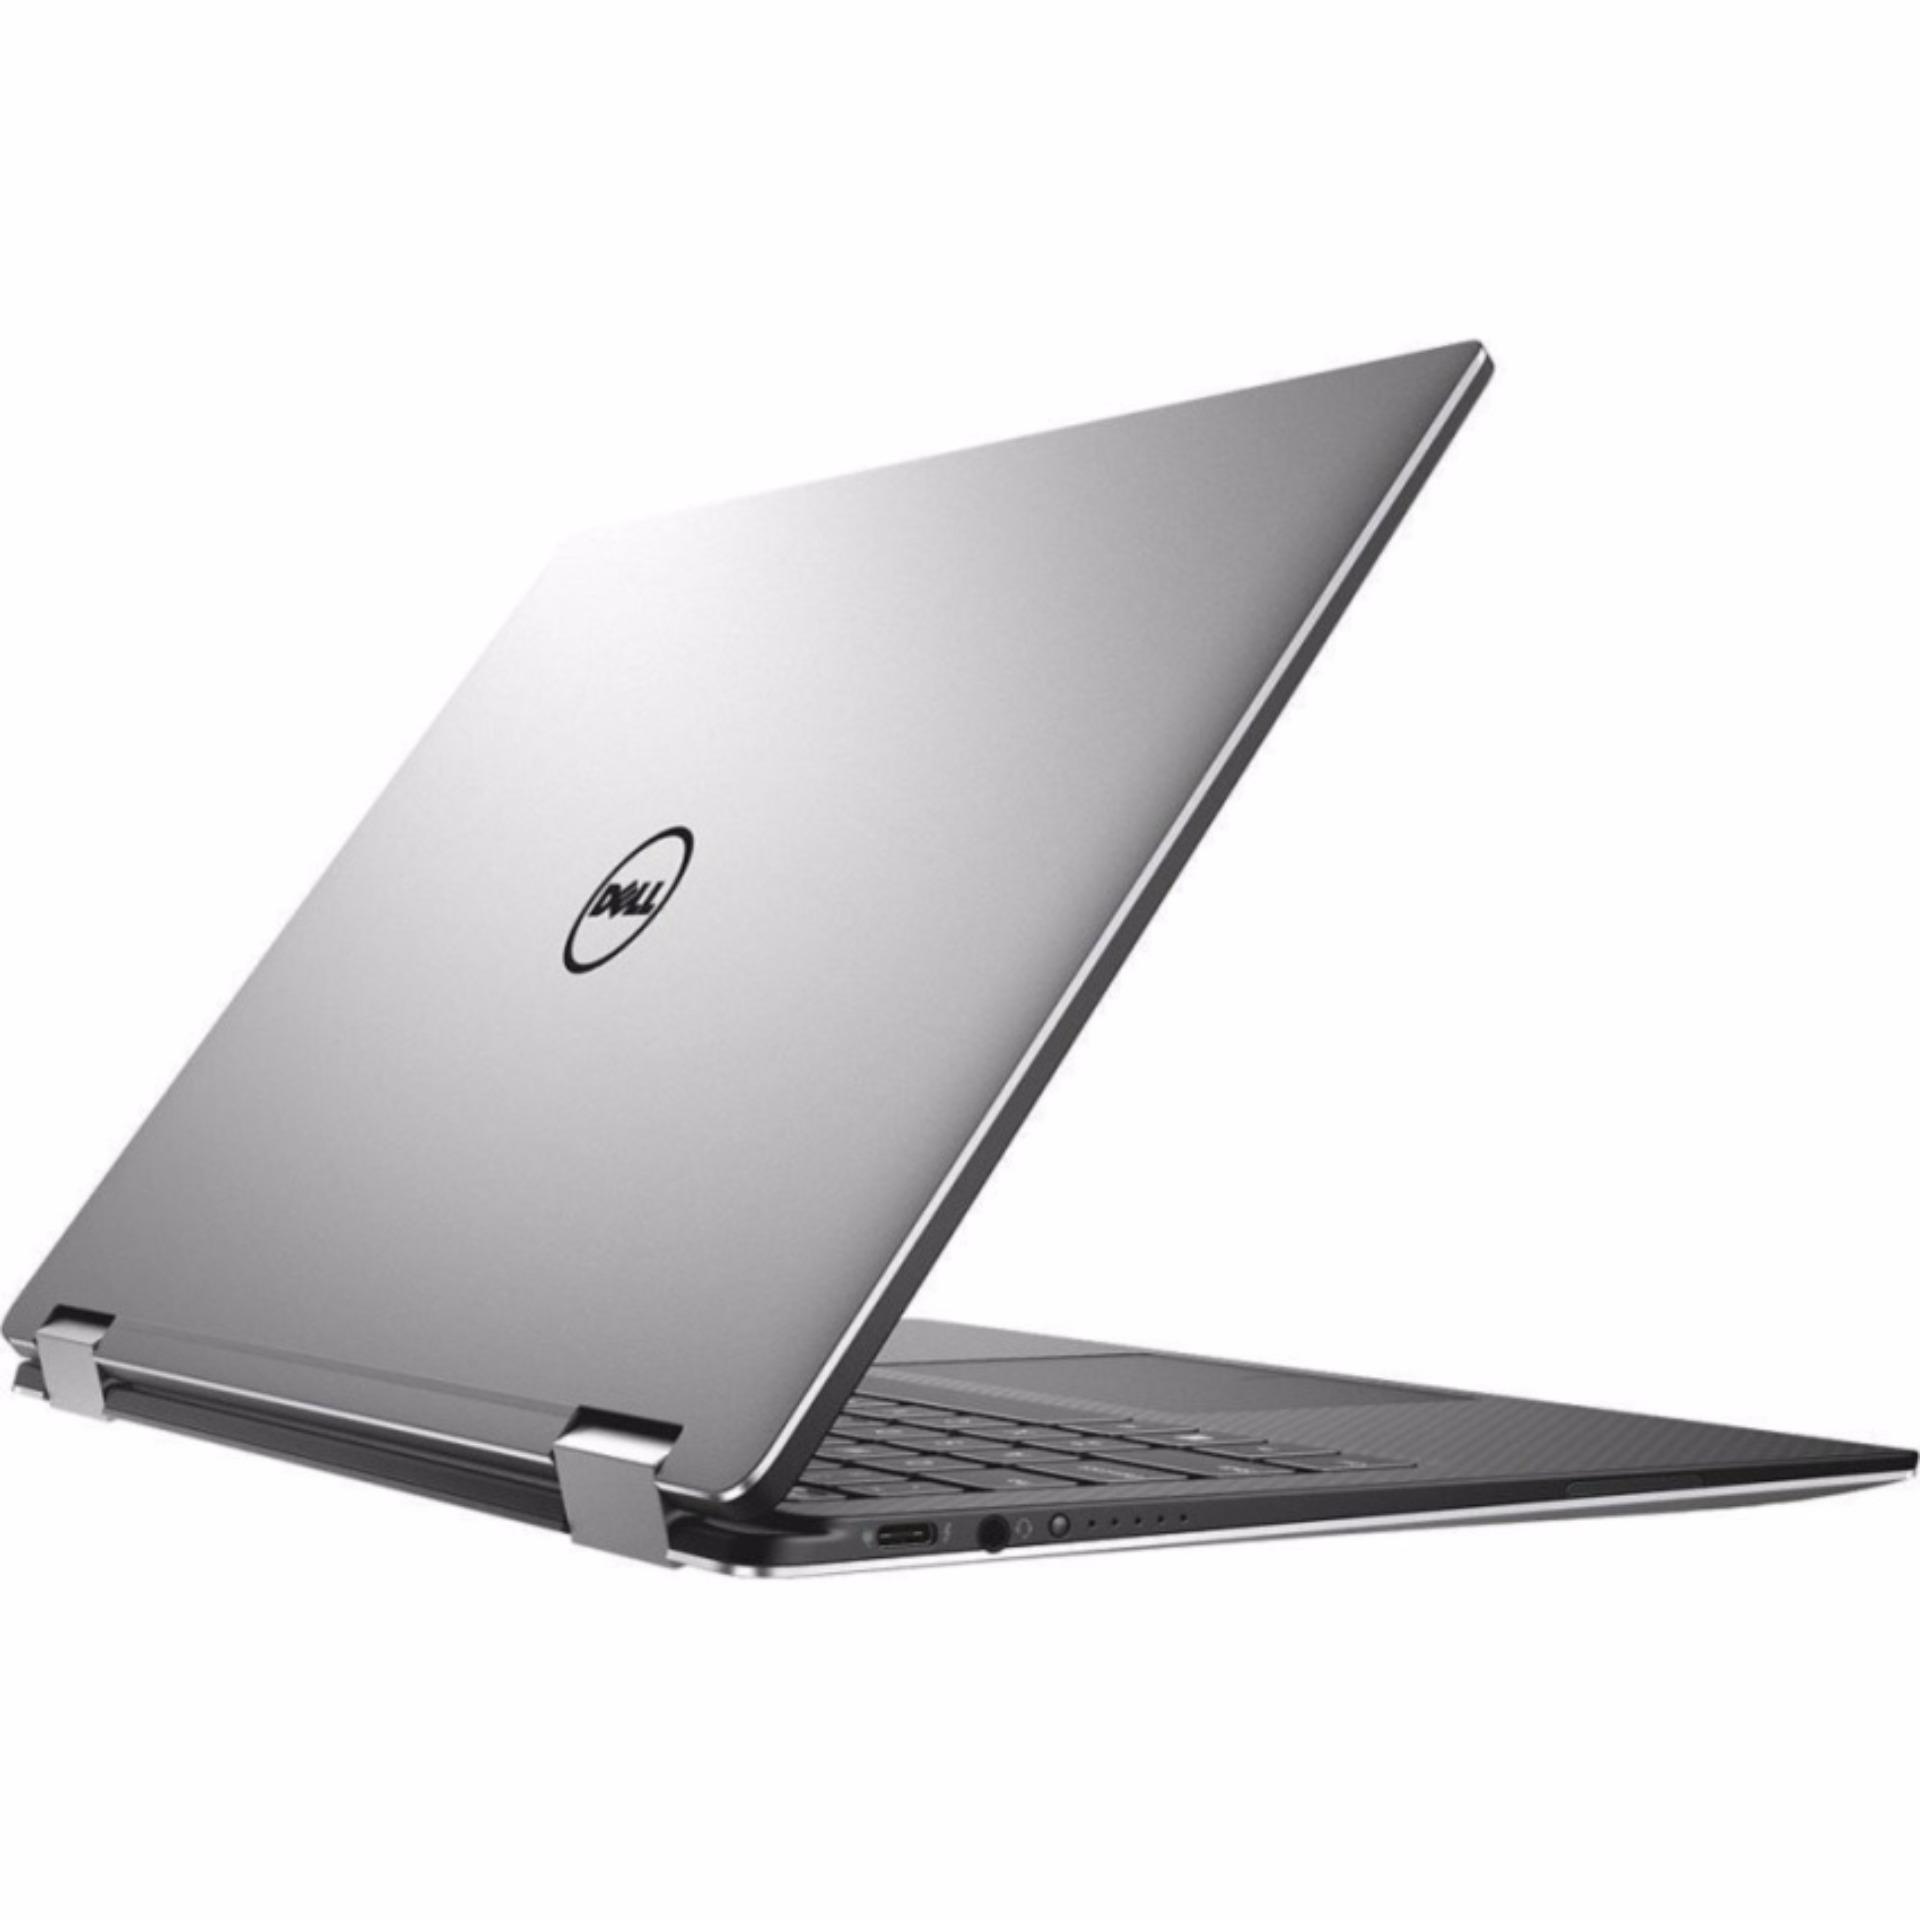 Dell XPS 13 (9365) 2-in-1 Hybrid Laptop - 9365-57Y82SG (7th Gen Intel i5, 8GB, 256 SSD)